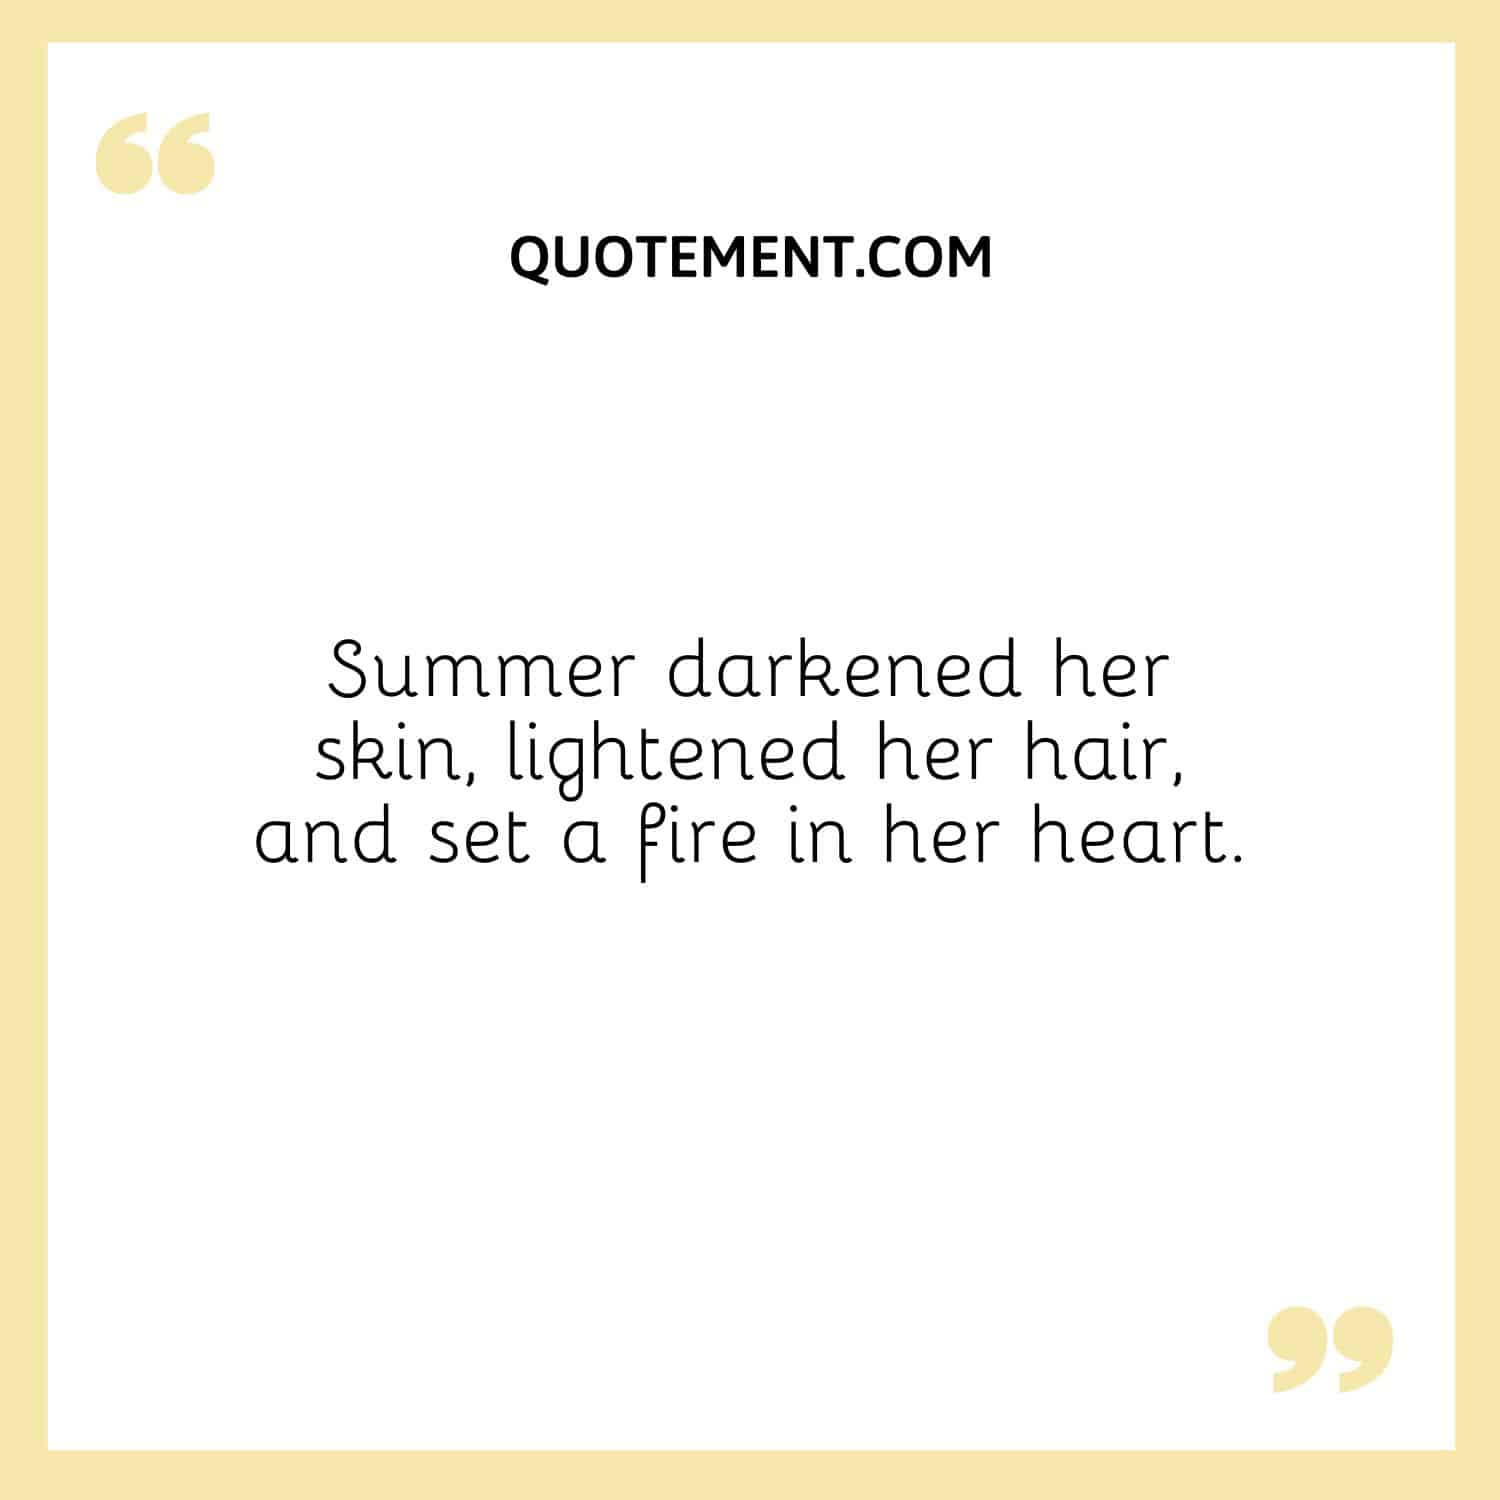 El verano oscureció su piel, aclaró su pelo y encendió un fuego en su corazón.